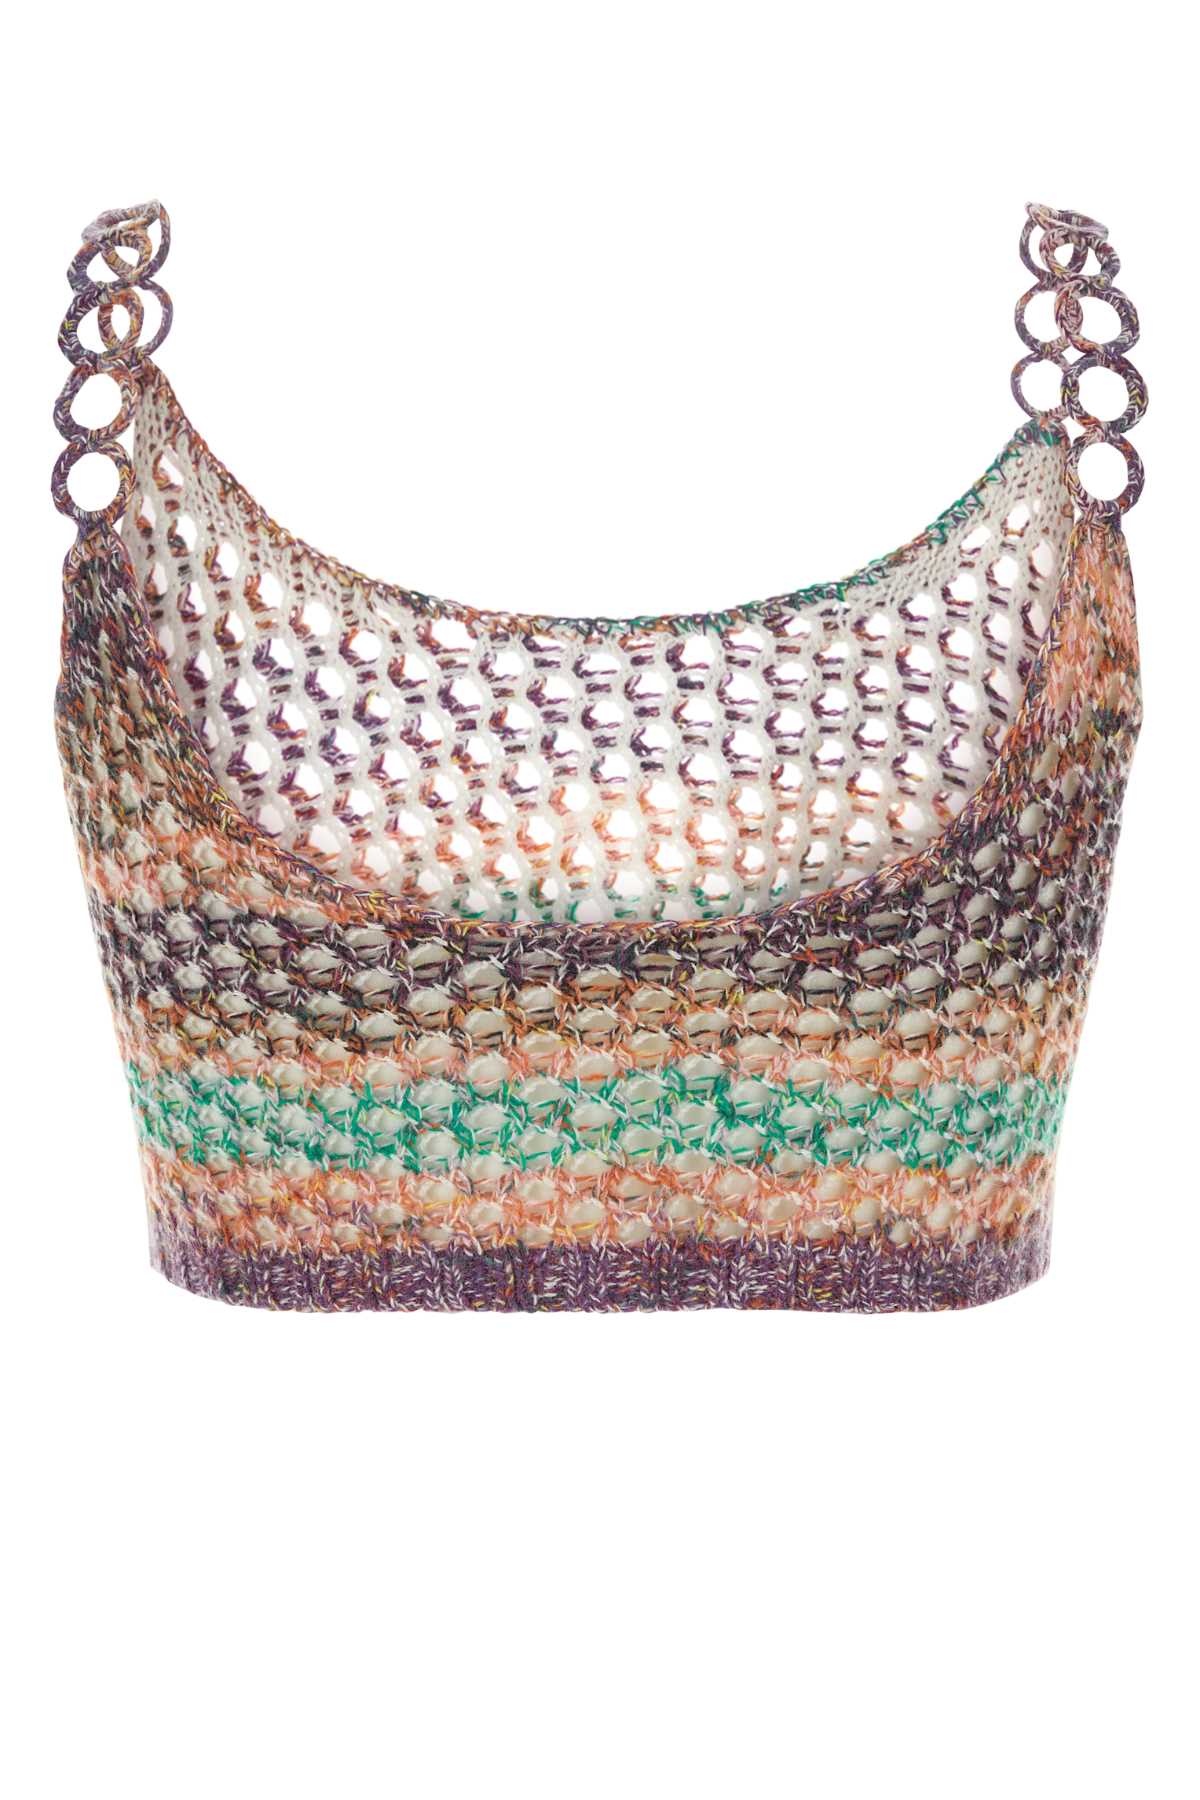 Chloé Multicolor Crochet Top In Multicolorblack1